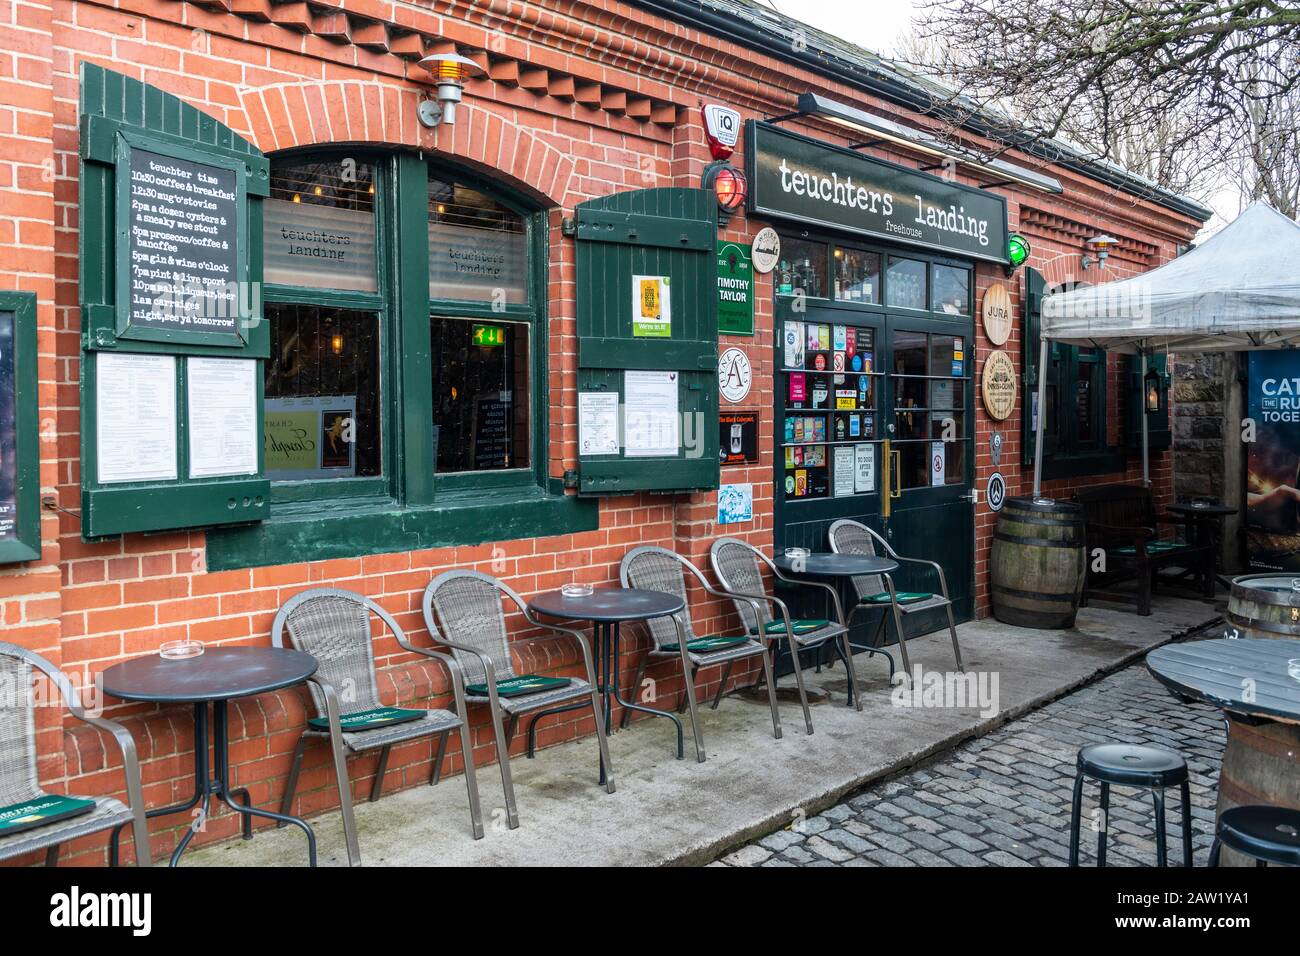 Teuchters Landing pub et restaurant sur Dock Place à Leith, Édimbourg, Écosse, Royaume-Uni Banque D'Images